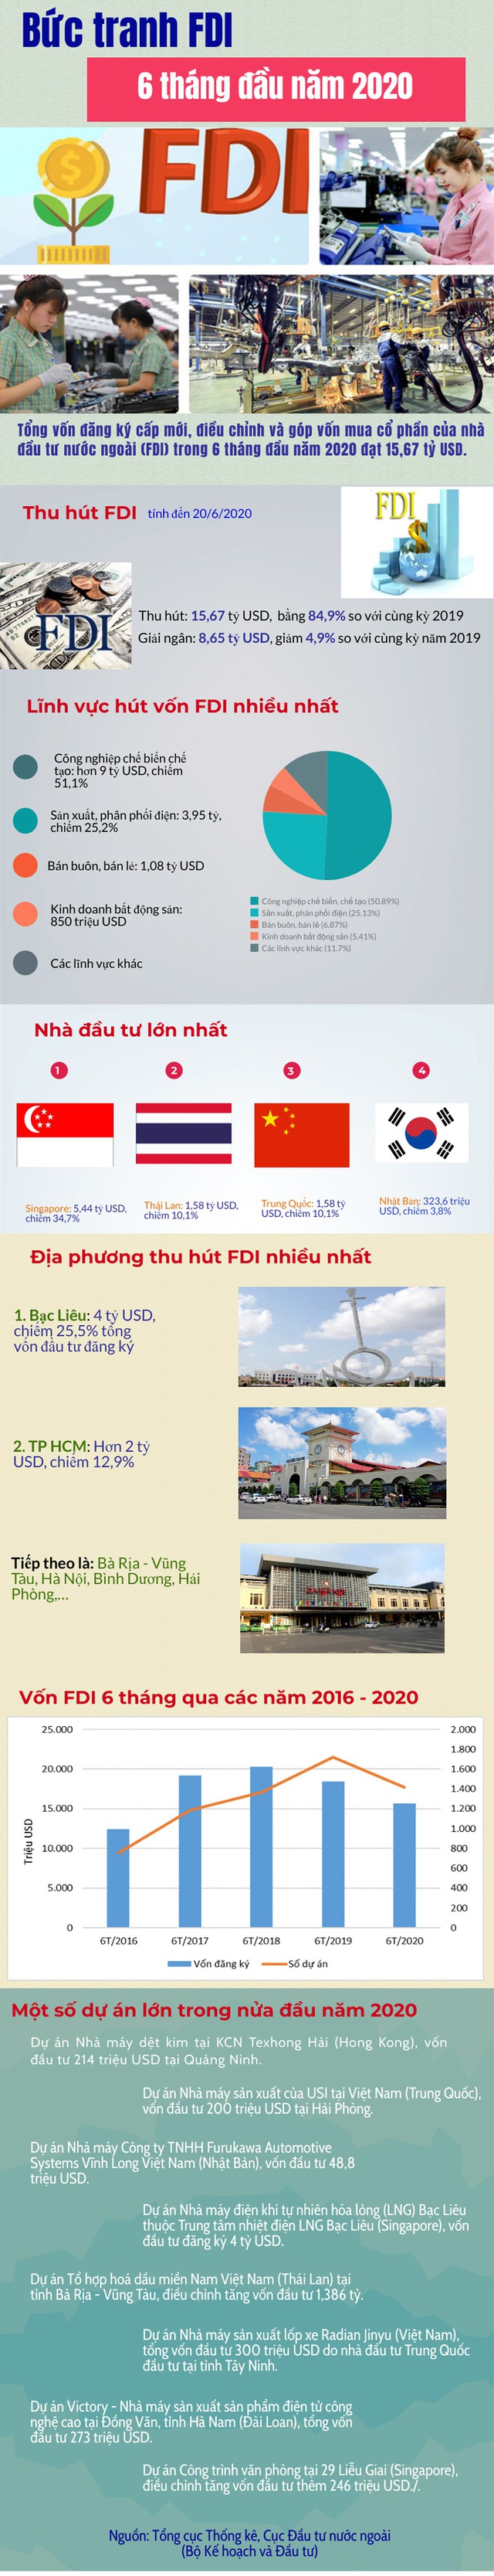 Những nét nổi bật trong bức tranh FDI 6 tháng đầu năm 2020 - Ảnh 1.